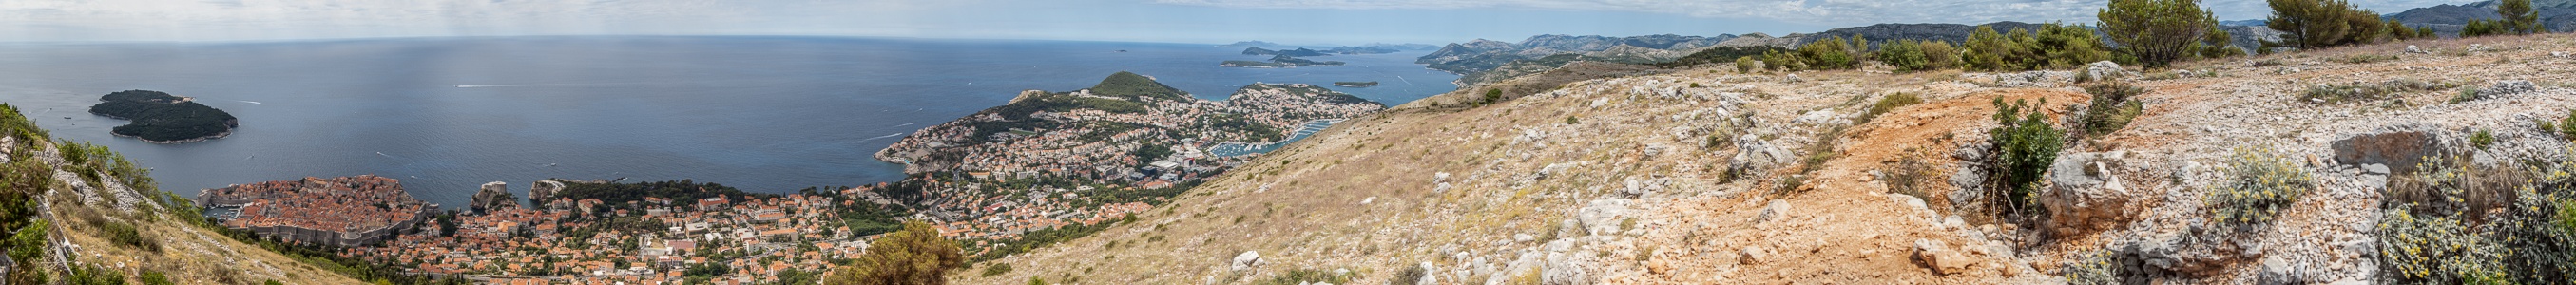 Dubrovnik Blick vom Brdo Srđ: Dalmatinische Küste und Adriatisches Meer (Mittelmeer)